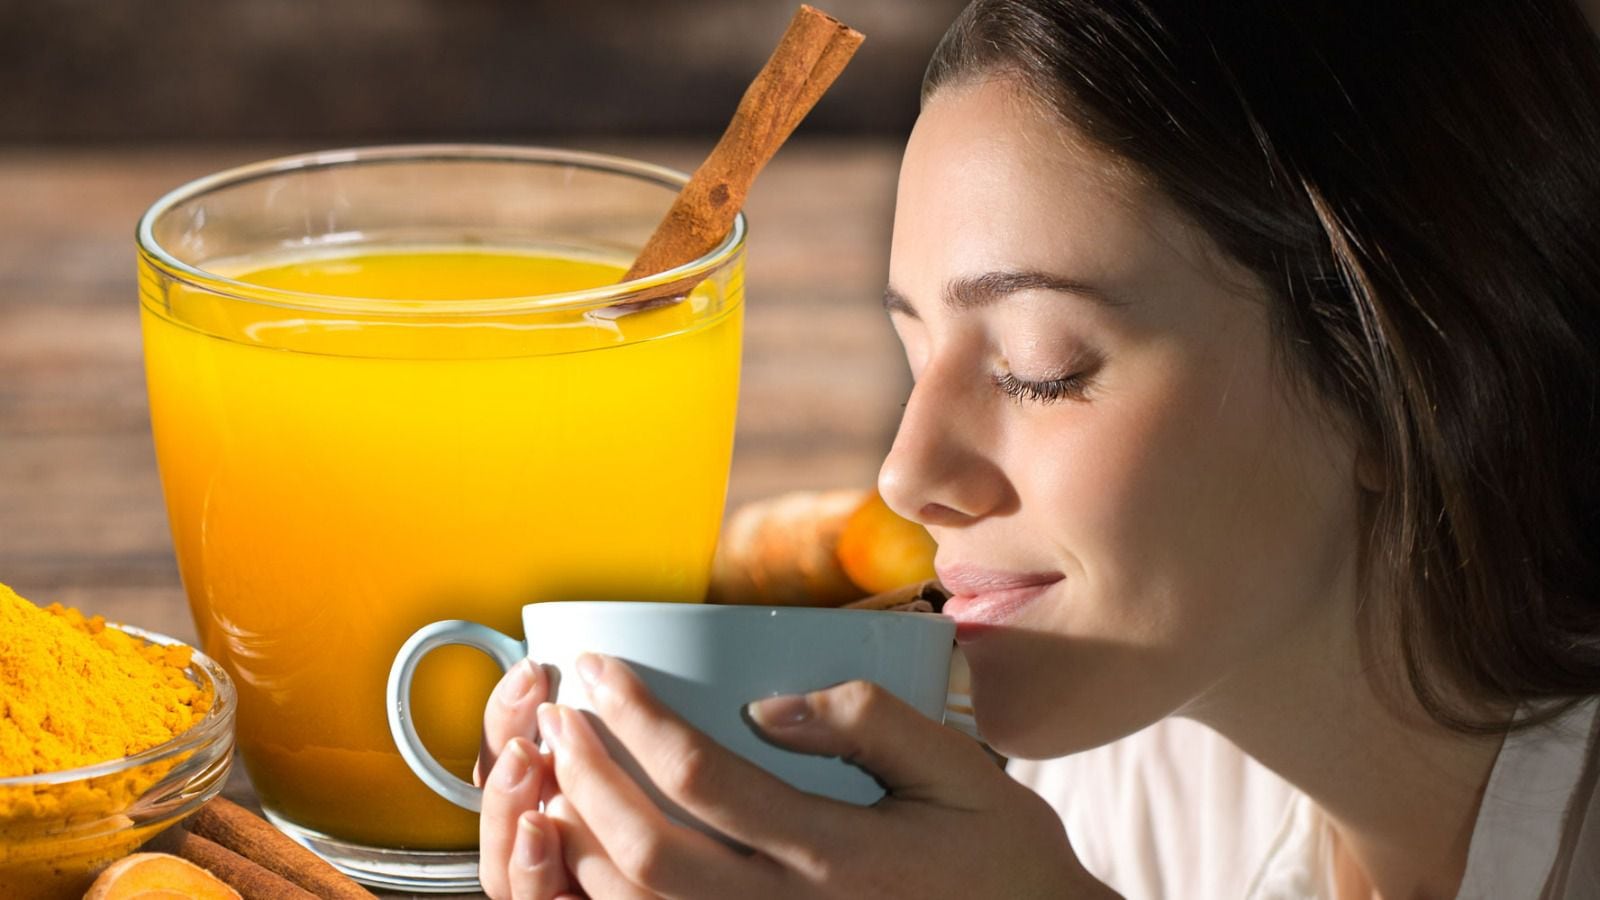 El té de cúrcuma es un remedio popular usado contra dolores y demás malestares. (Fotoarte: Andrea López Trejo | El Financiero)